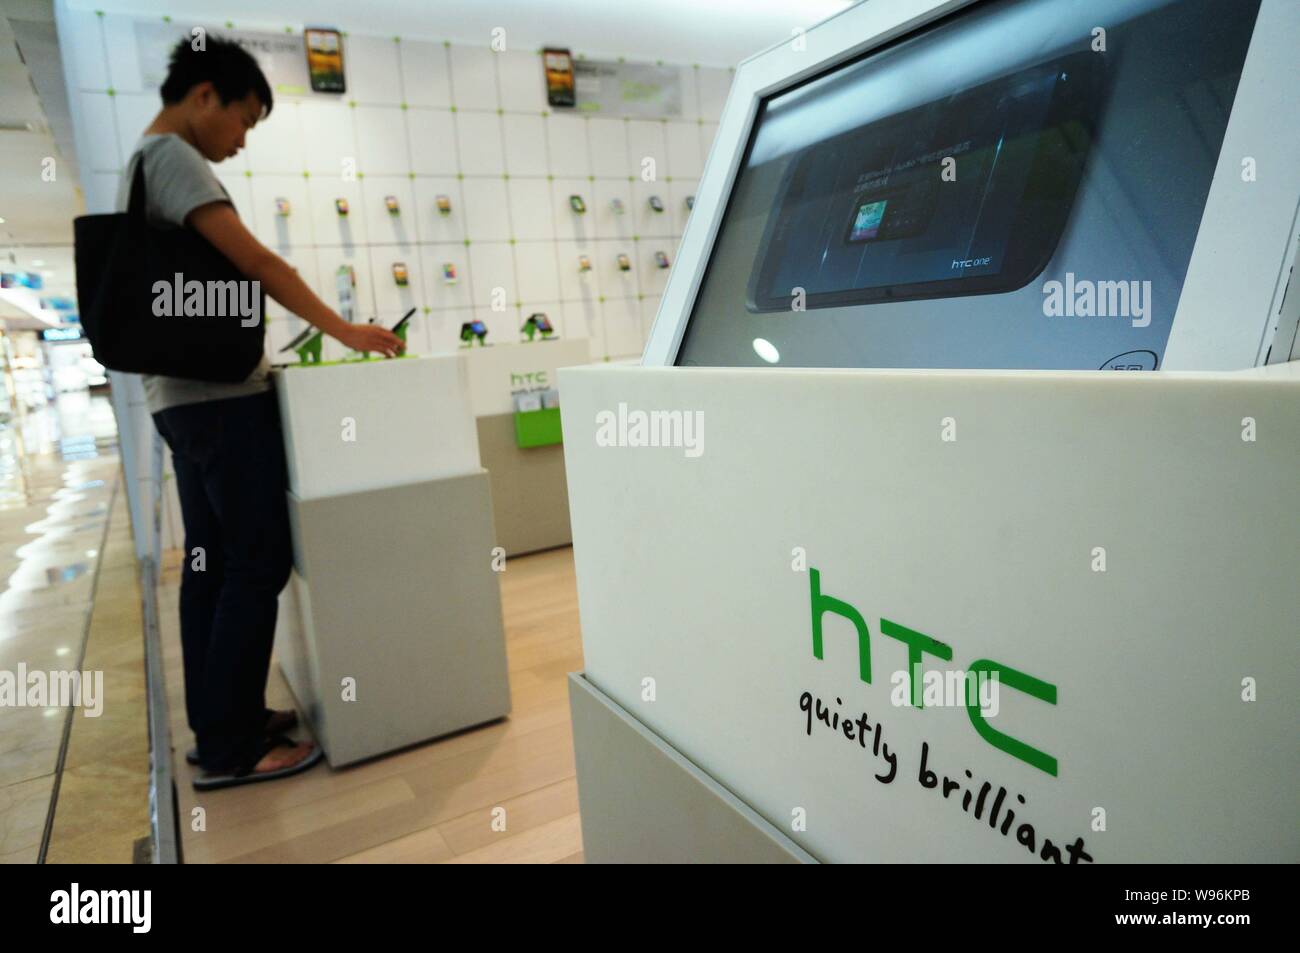 ---- Ein Kunde an einem HTC store in Hangzhou city gesehen, East China Zhejiang provinz, 5. Juni 2012. Apple Incs enttäuschend China Sales informeller Stockfoto